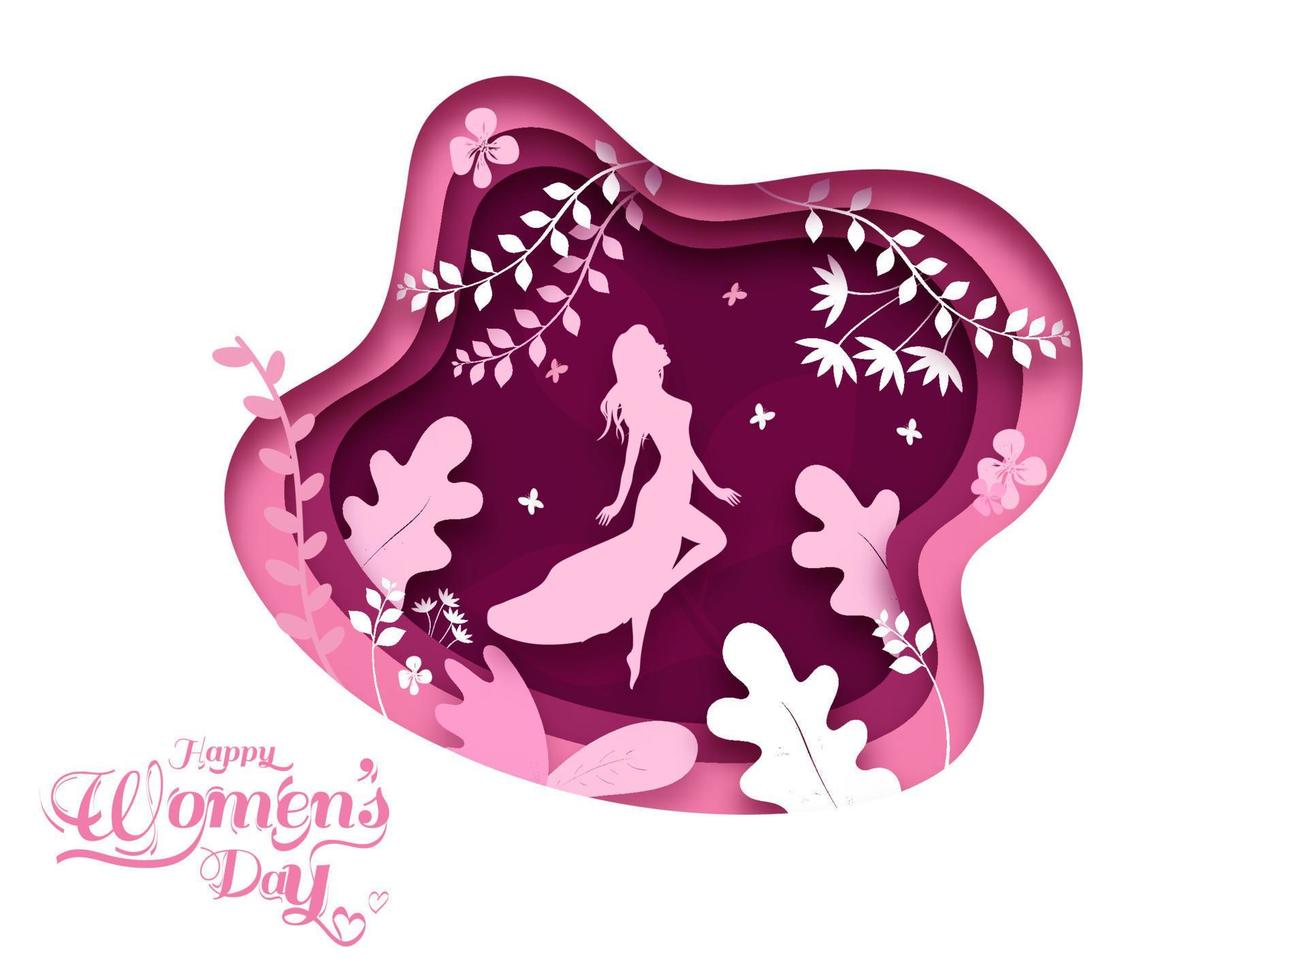 papel camada cortar poster Projeto decorado com floral e silhueta fêmea para feliz mulheres dia conceito. vetor